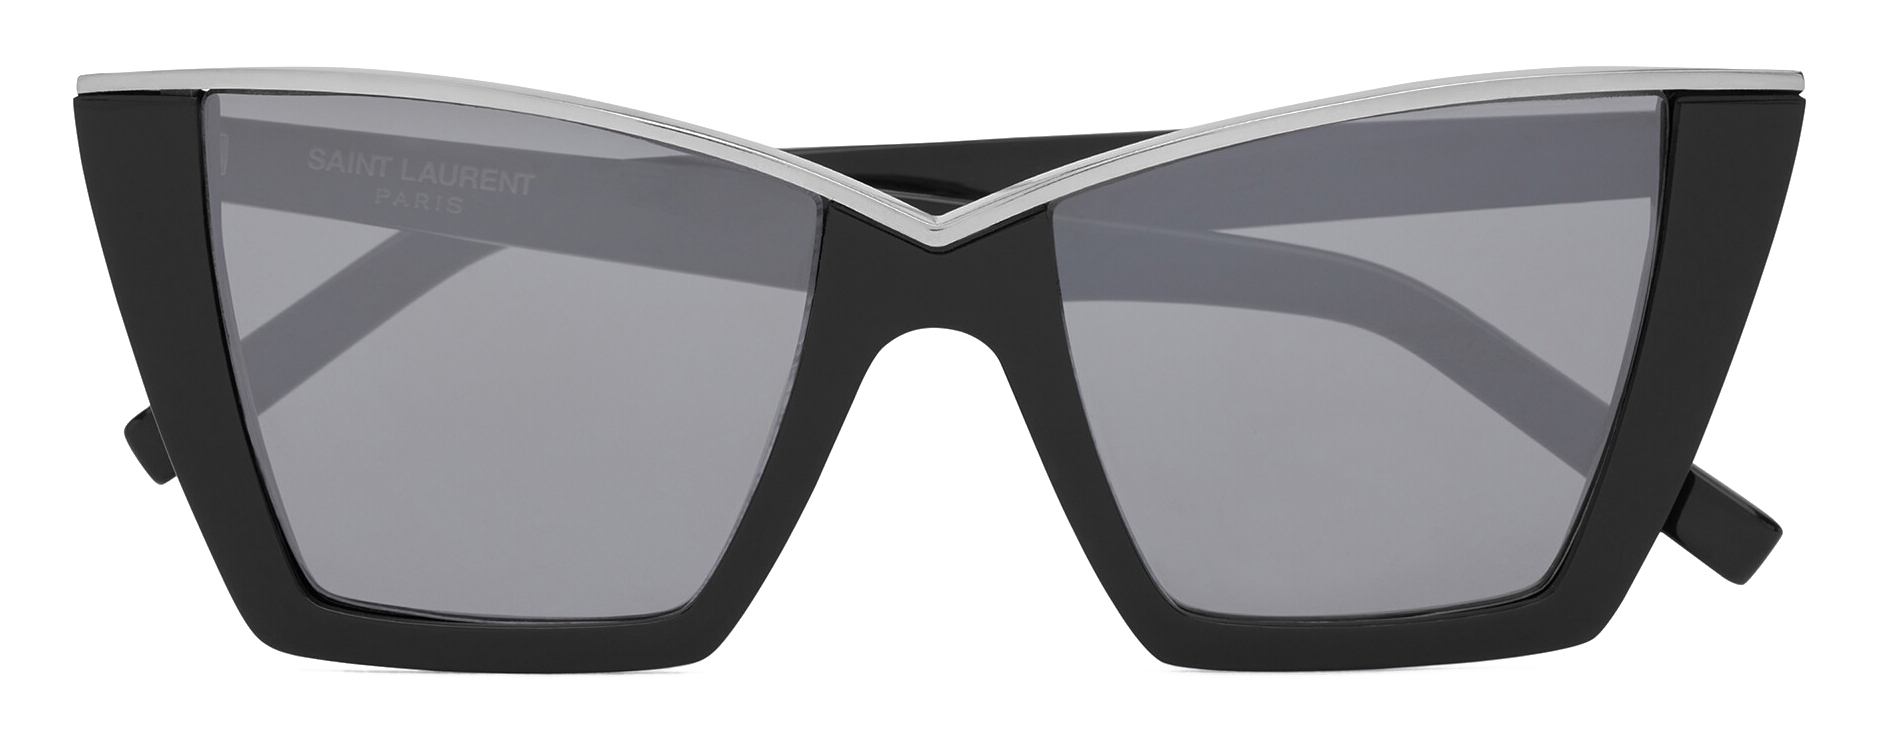 Black and gold SL 570 sunglasses - Saint Laurent Paris